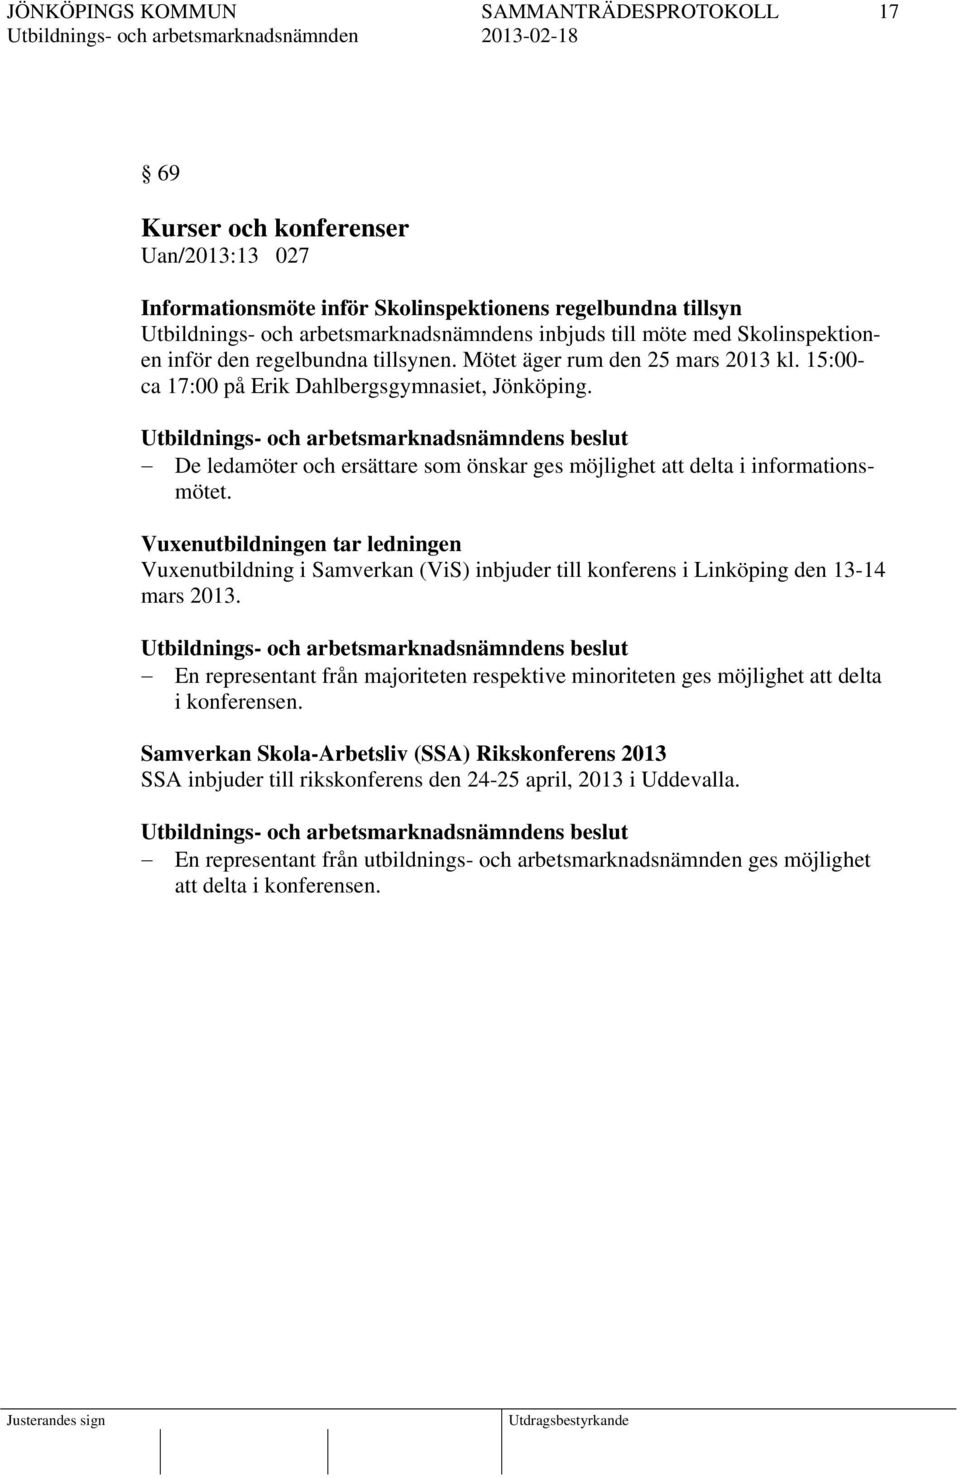 Vuxenutbildningen tar ledningen Vuxenutbildning i Samverkan (ViS) inbjuder till konferens i Linköping den 13-14 mars 2013.